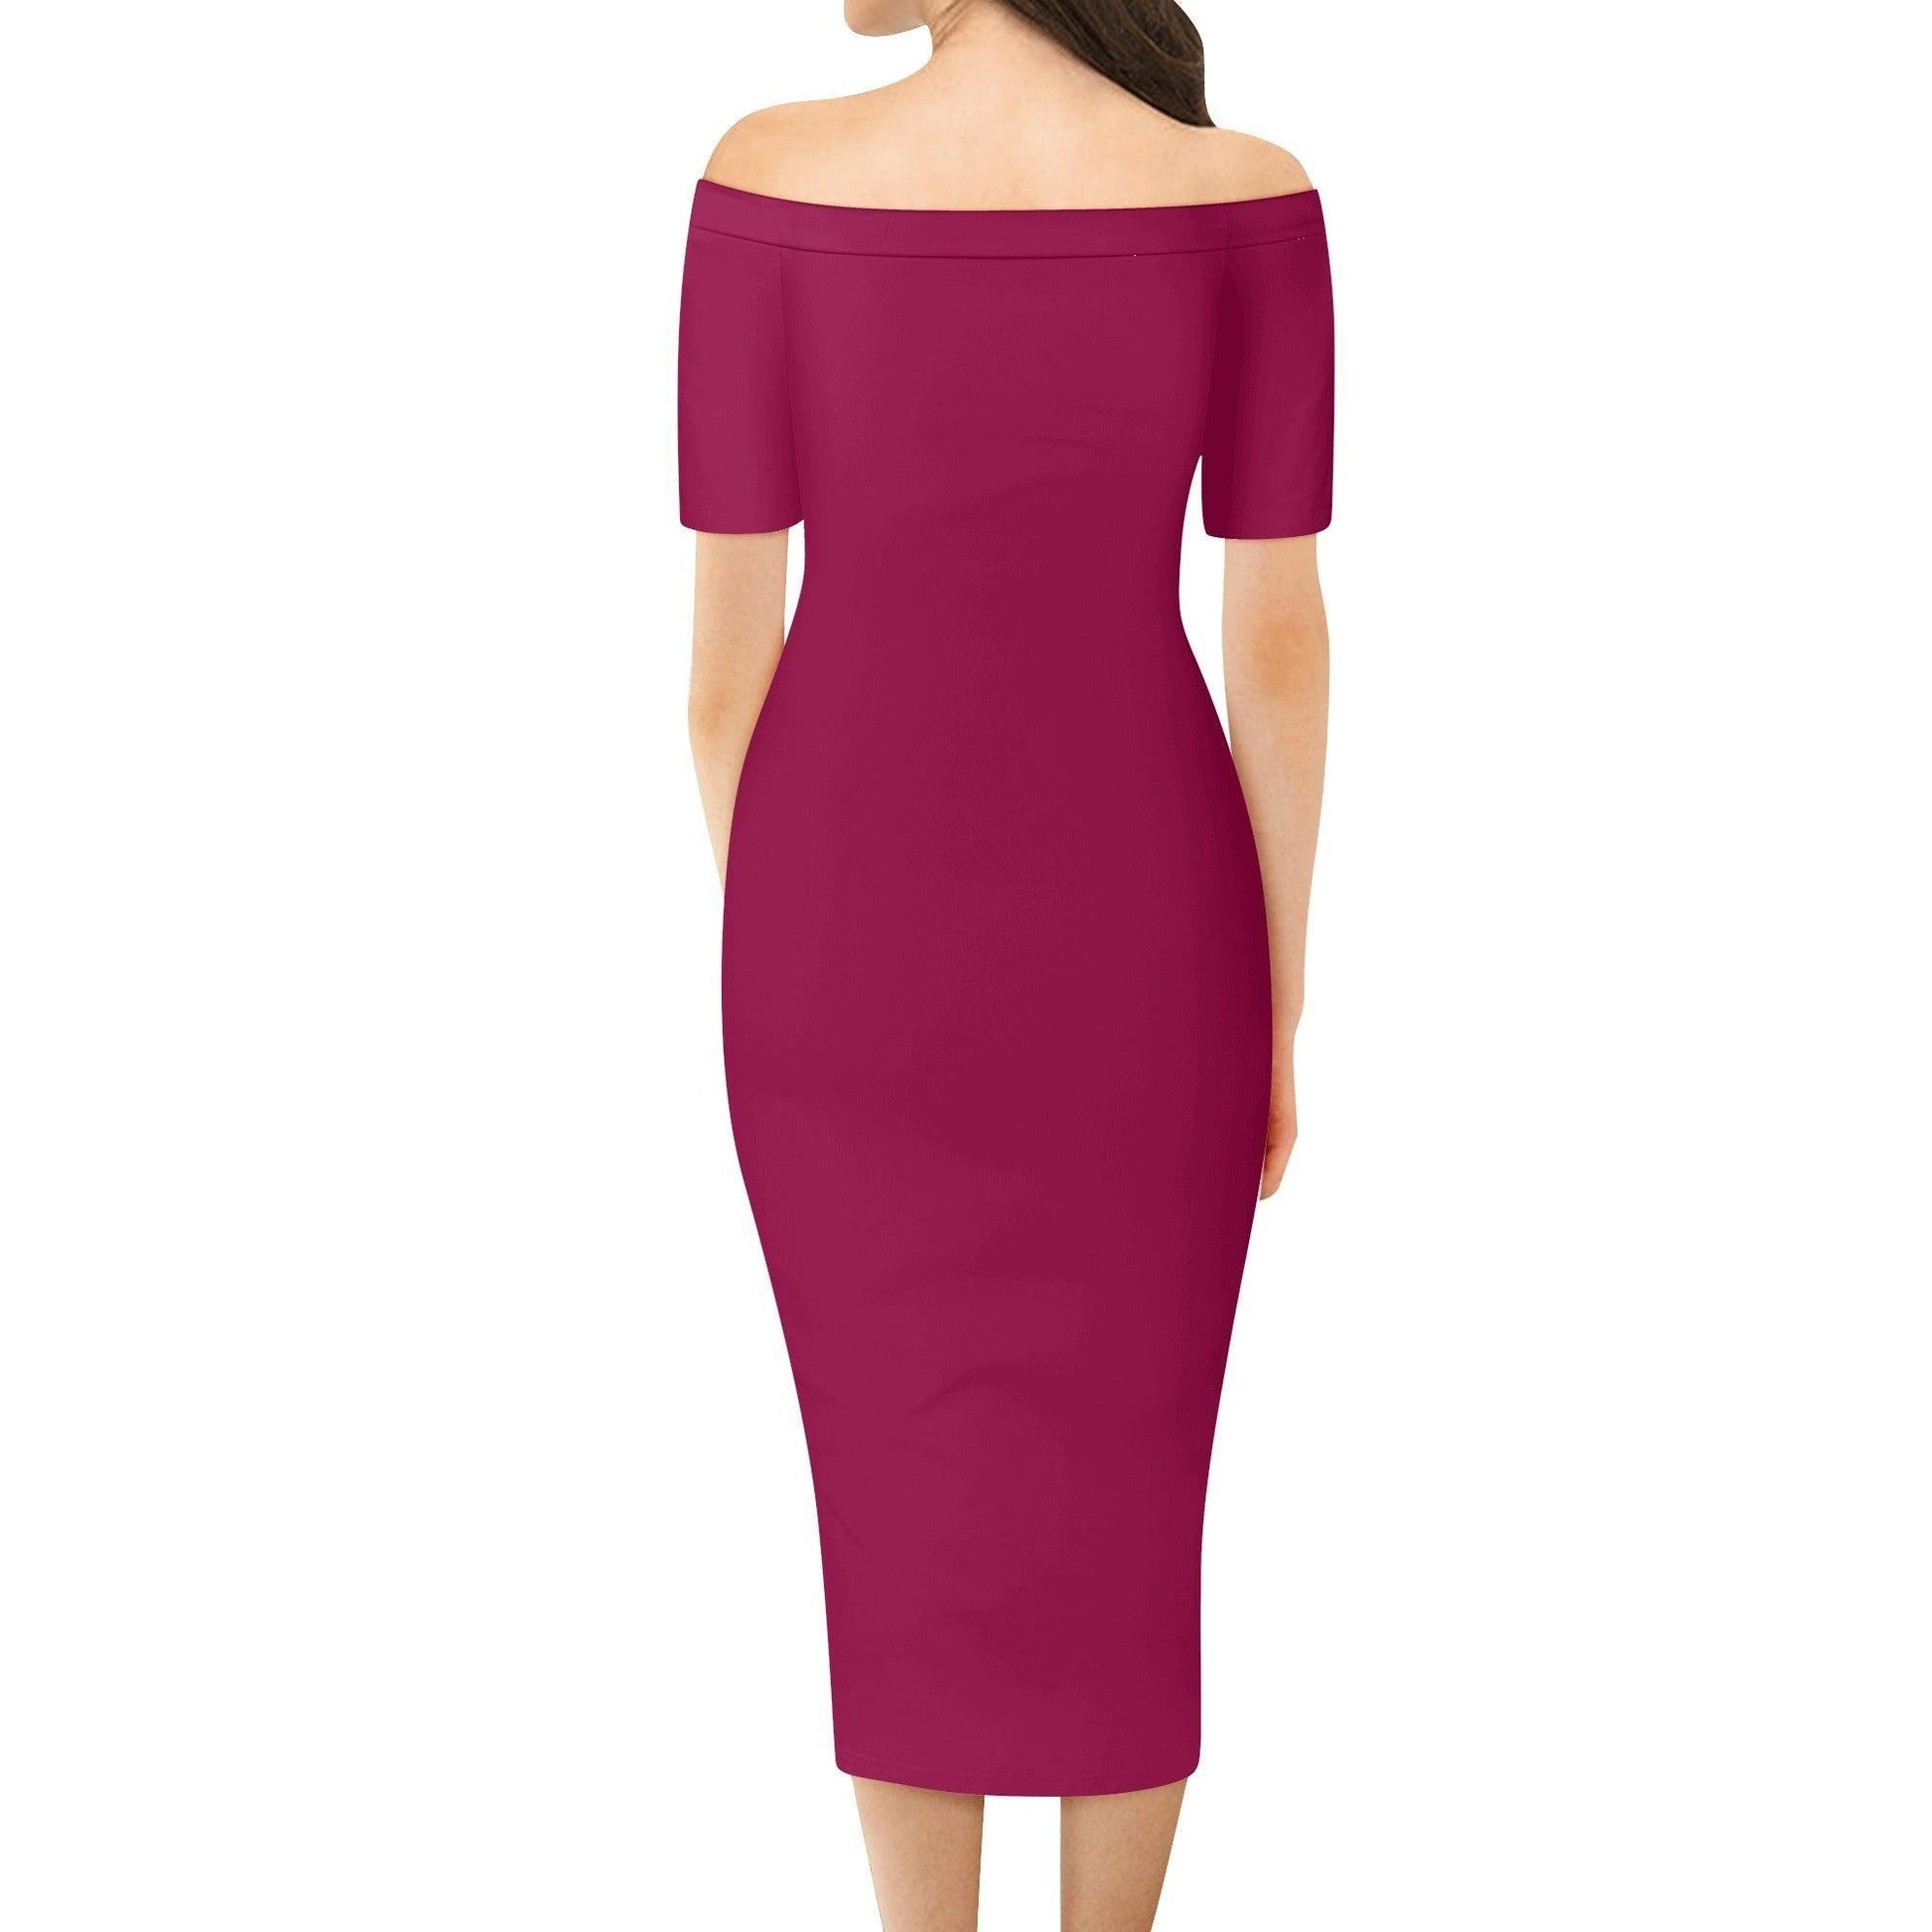 Burgund Off-Shoulder-Kleid -- Burgund Off-Shoulder-Kleid - undefined Off-Shoulder-Kleid | JLR Design